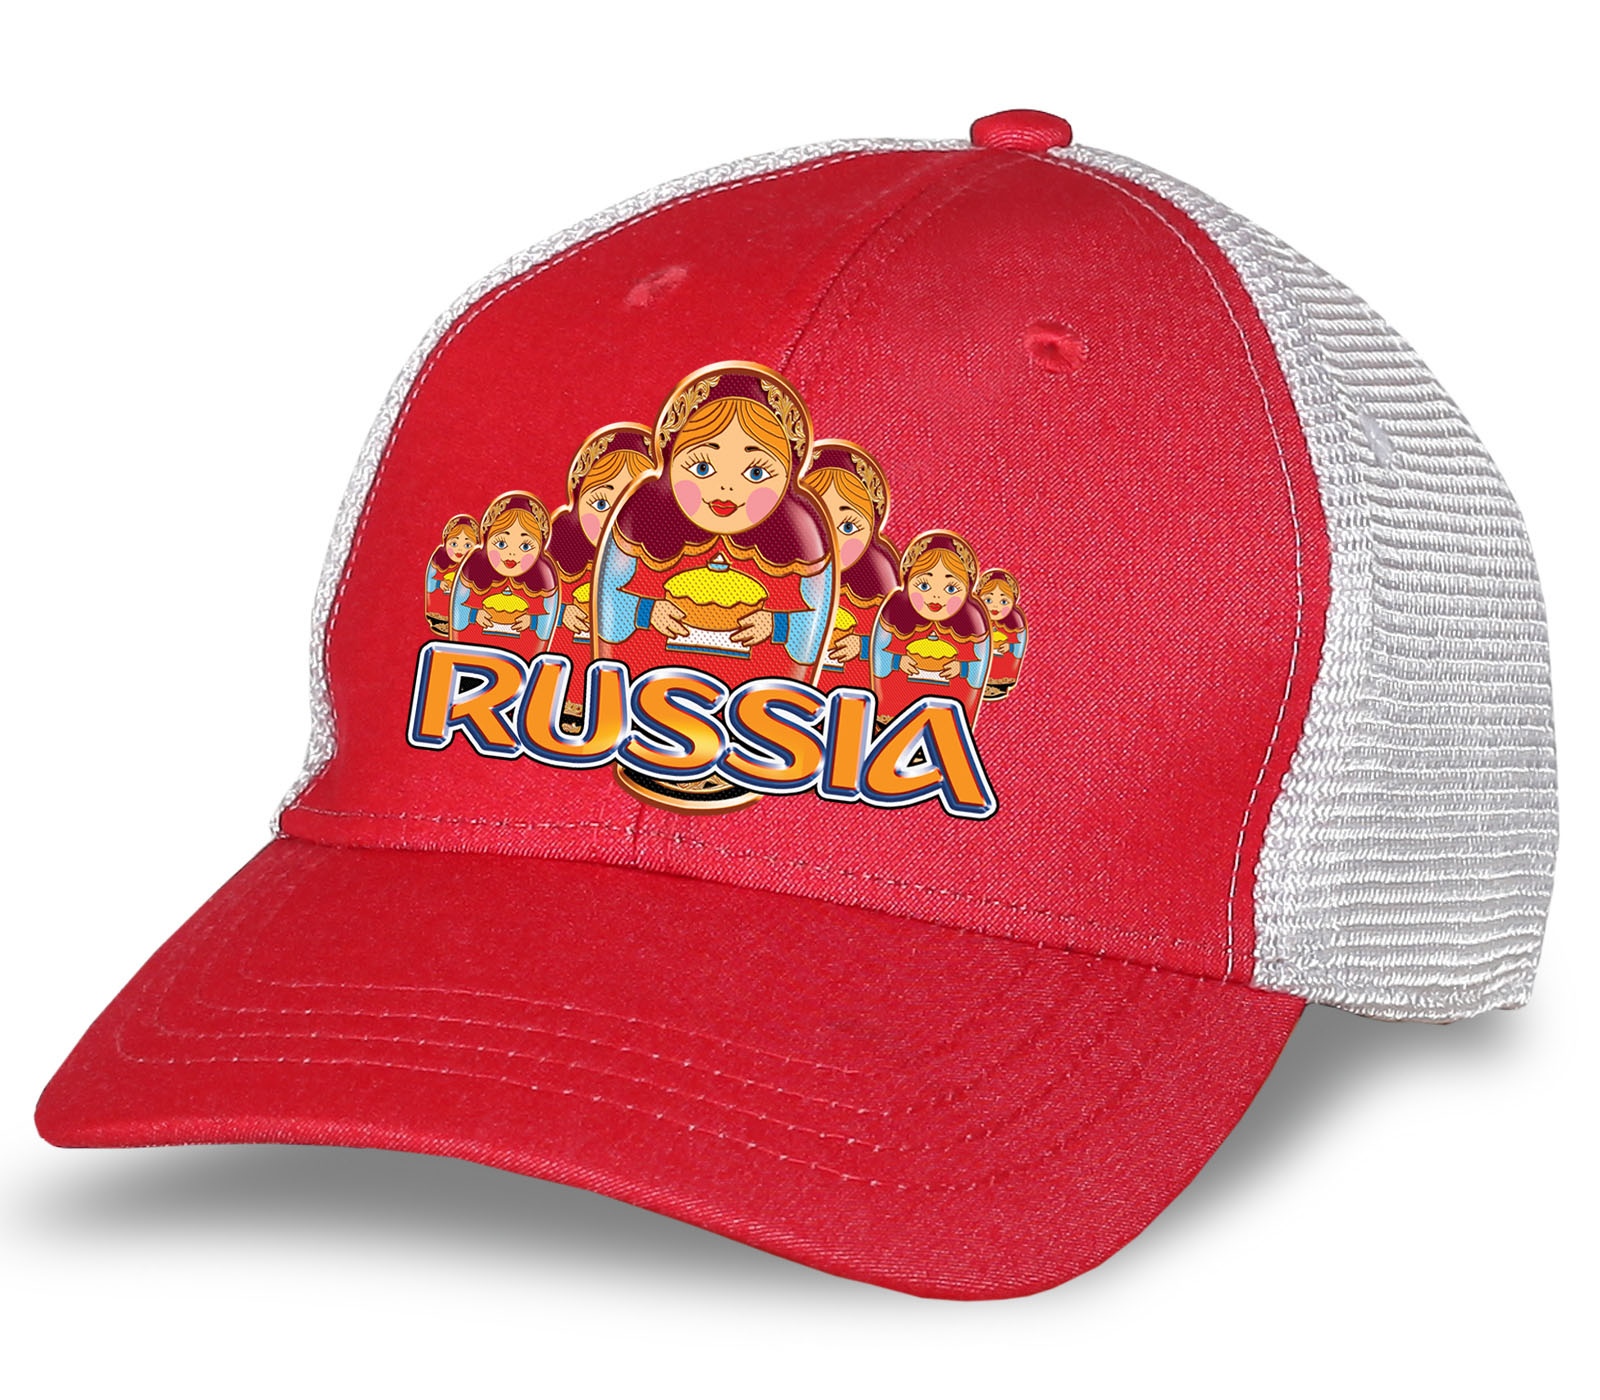 Заказать бейсболки Russia онлайн недорого